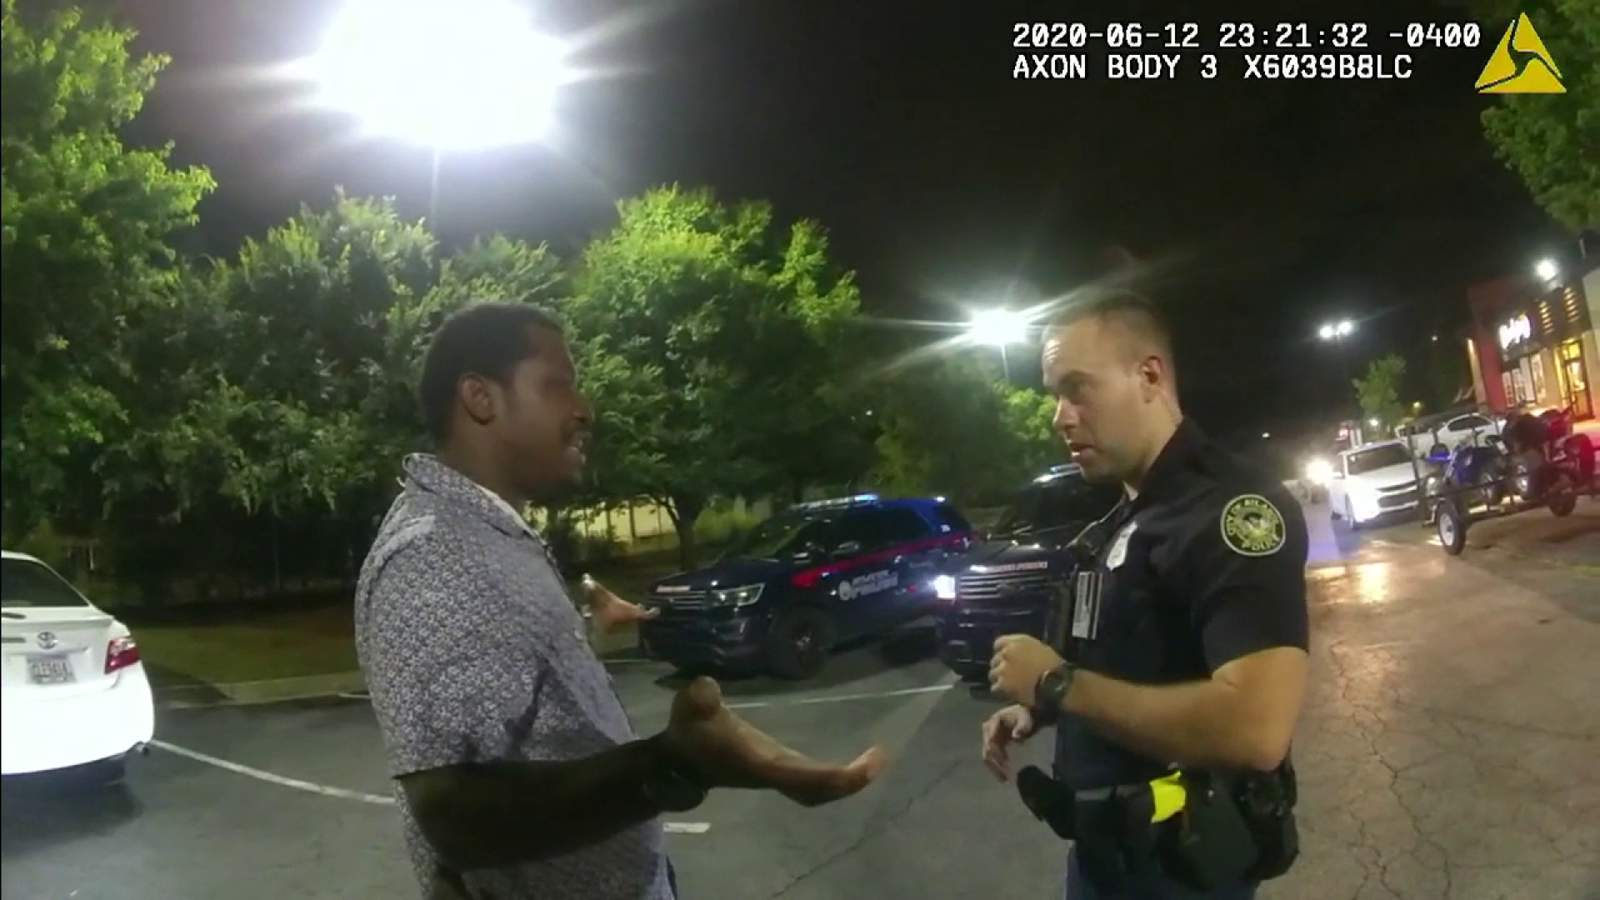 Police body cam video released in Atlanta shooting